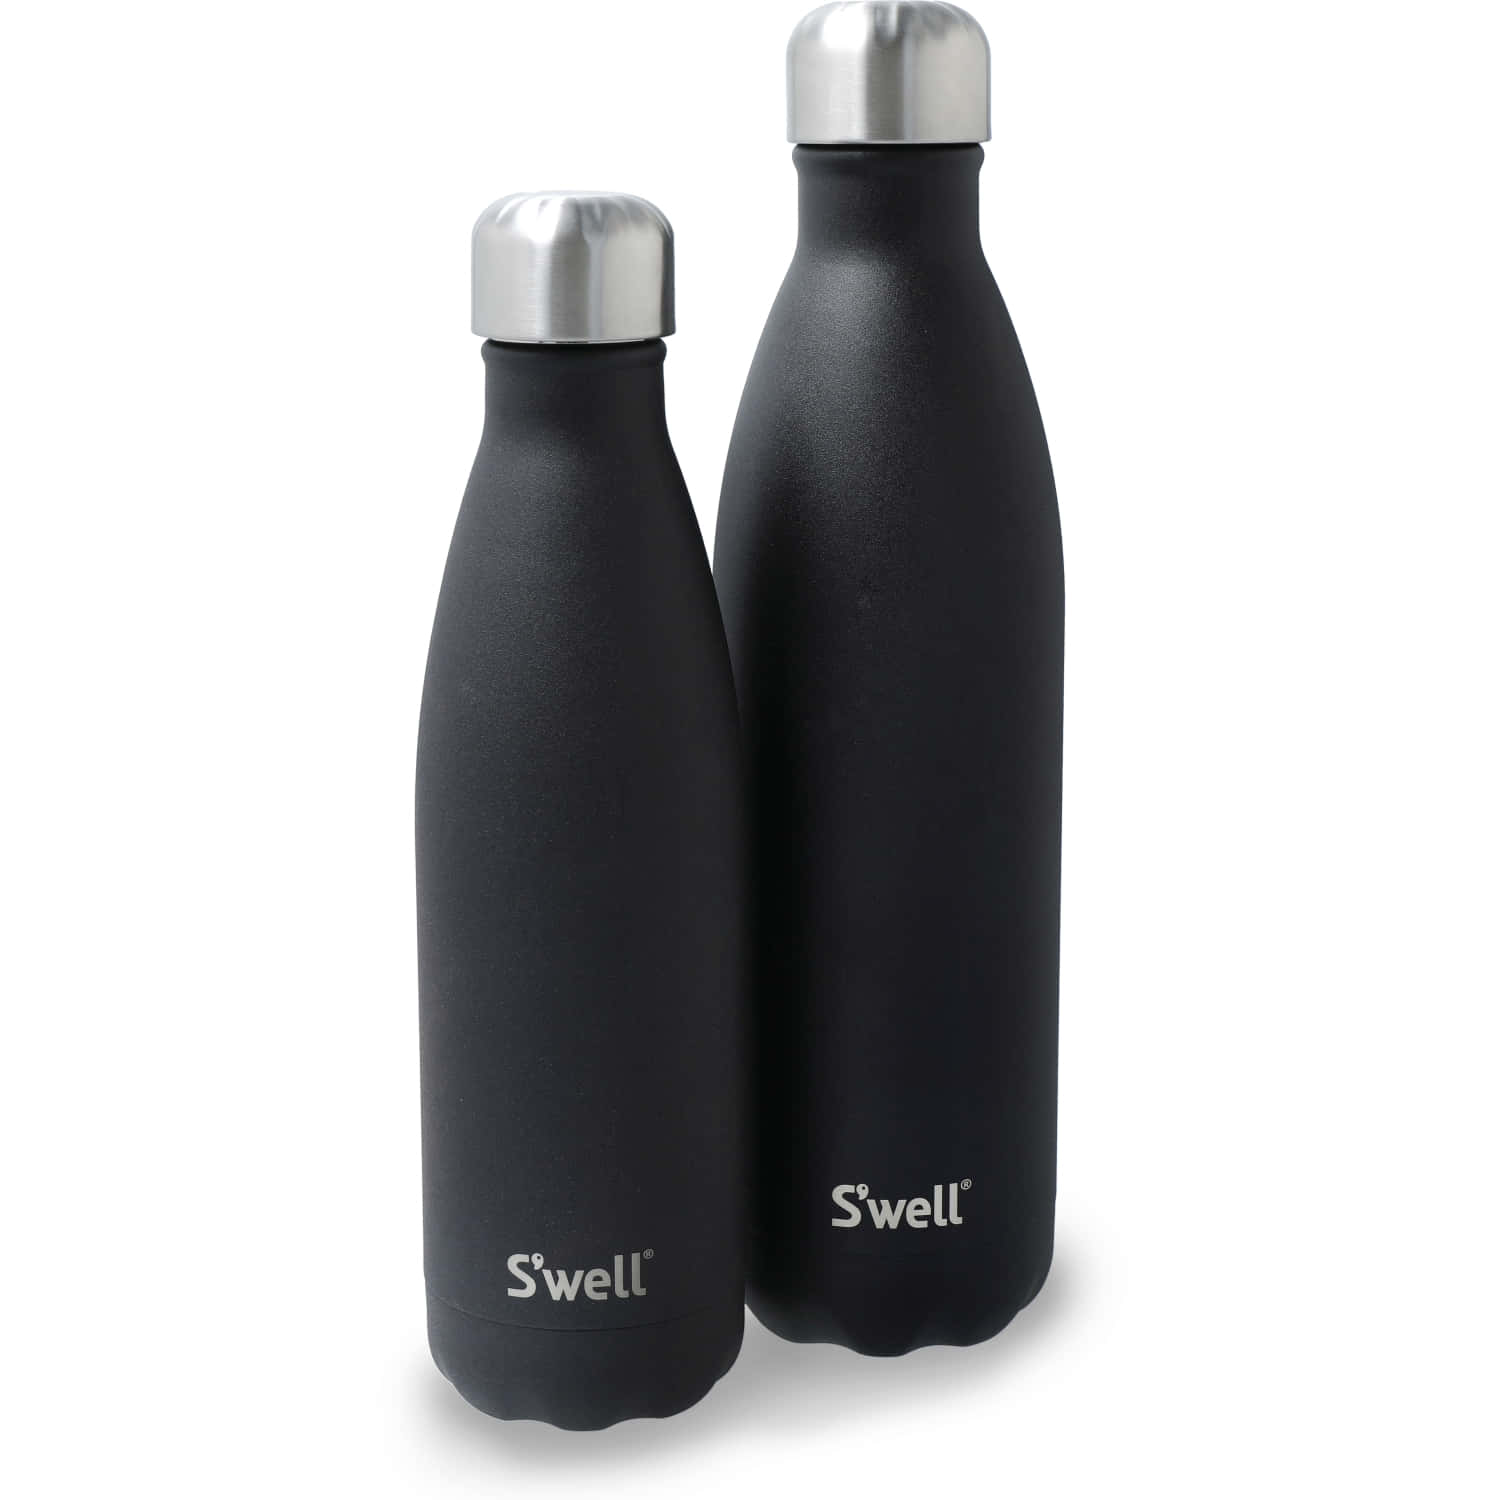 S'well Onyx - Water Bottle 500ml